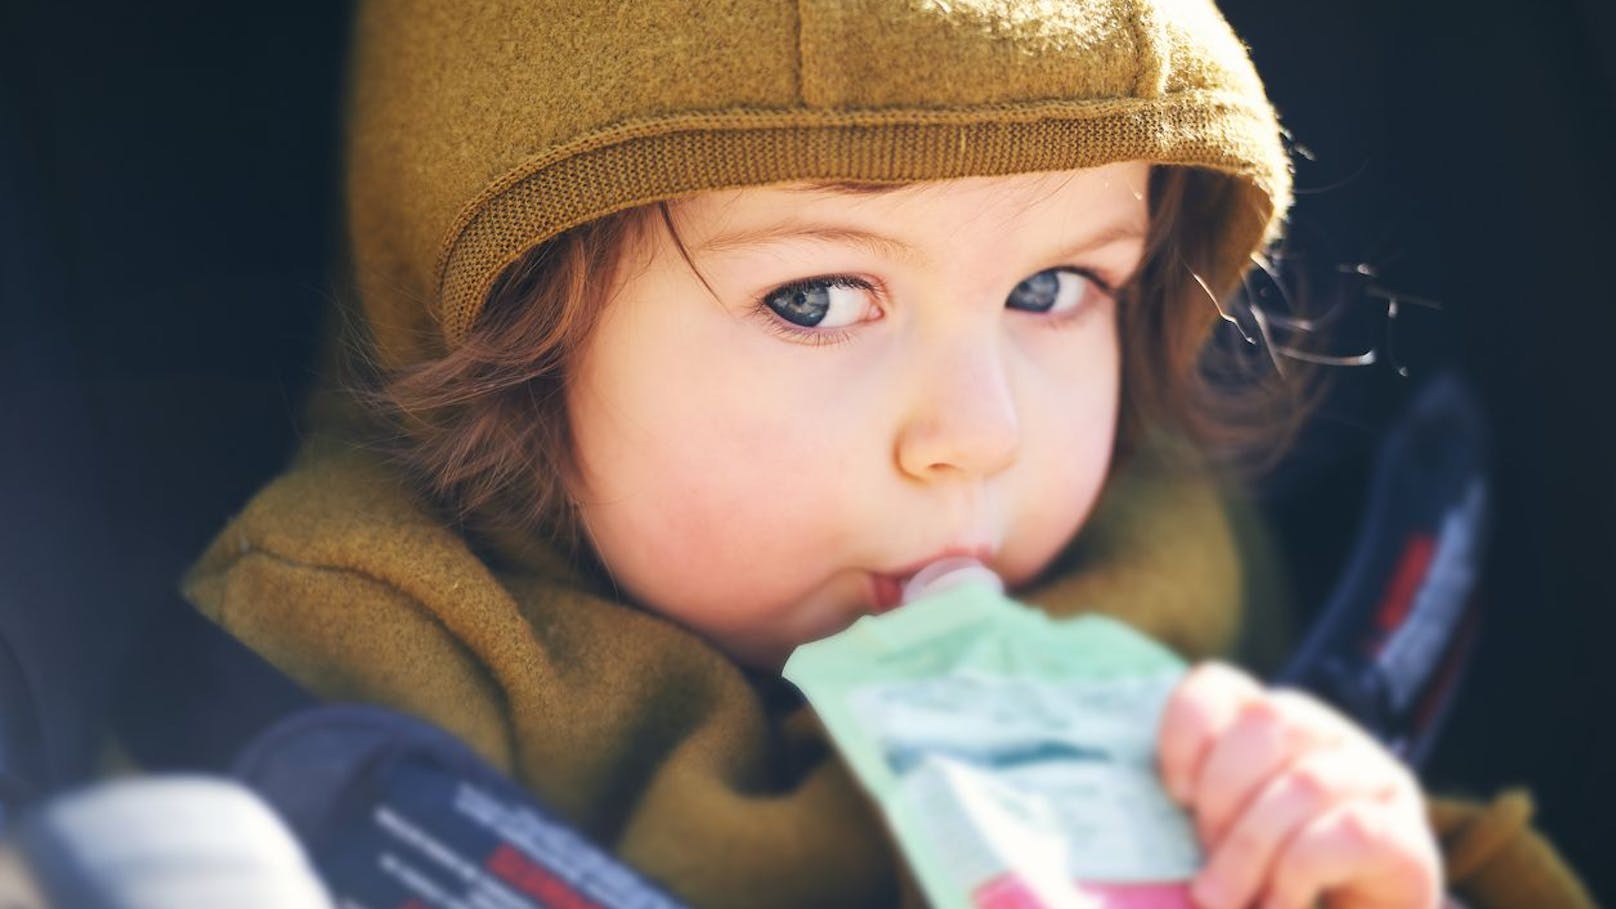 Frucht-Snacks für Kinder enthalten viel zu viel Zucker